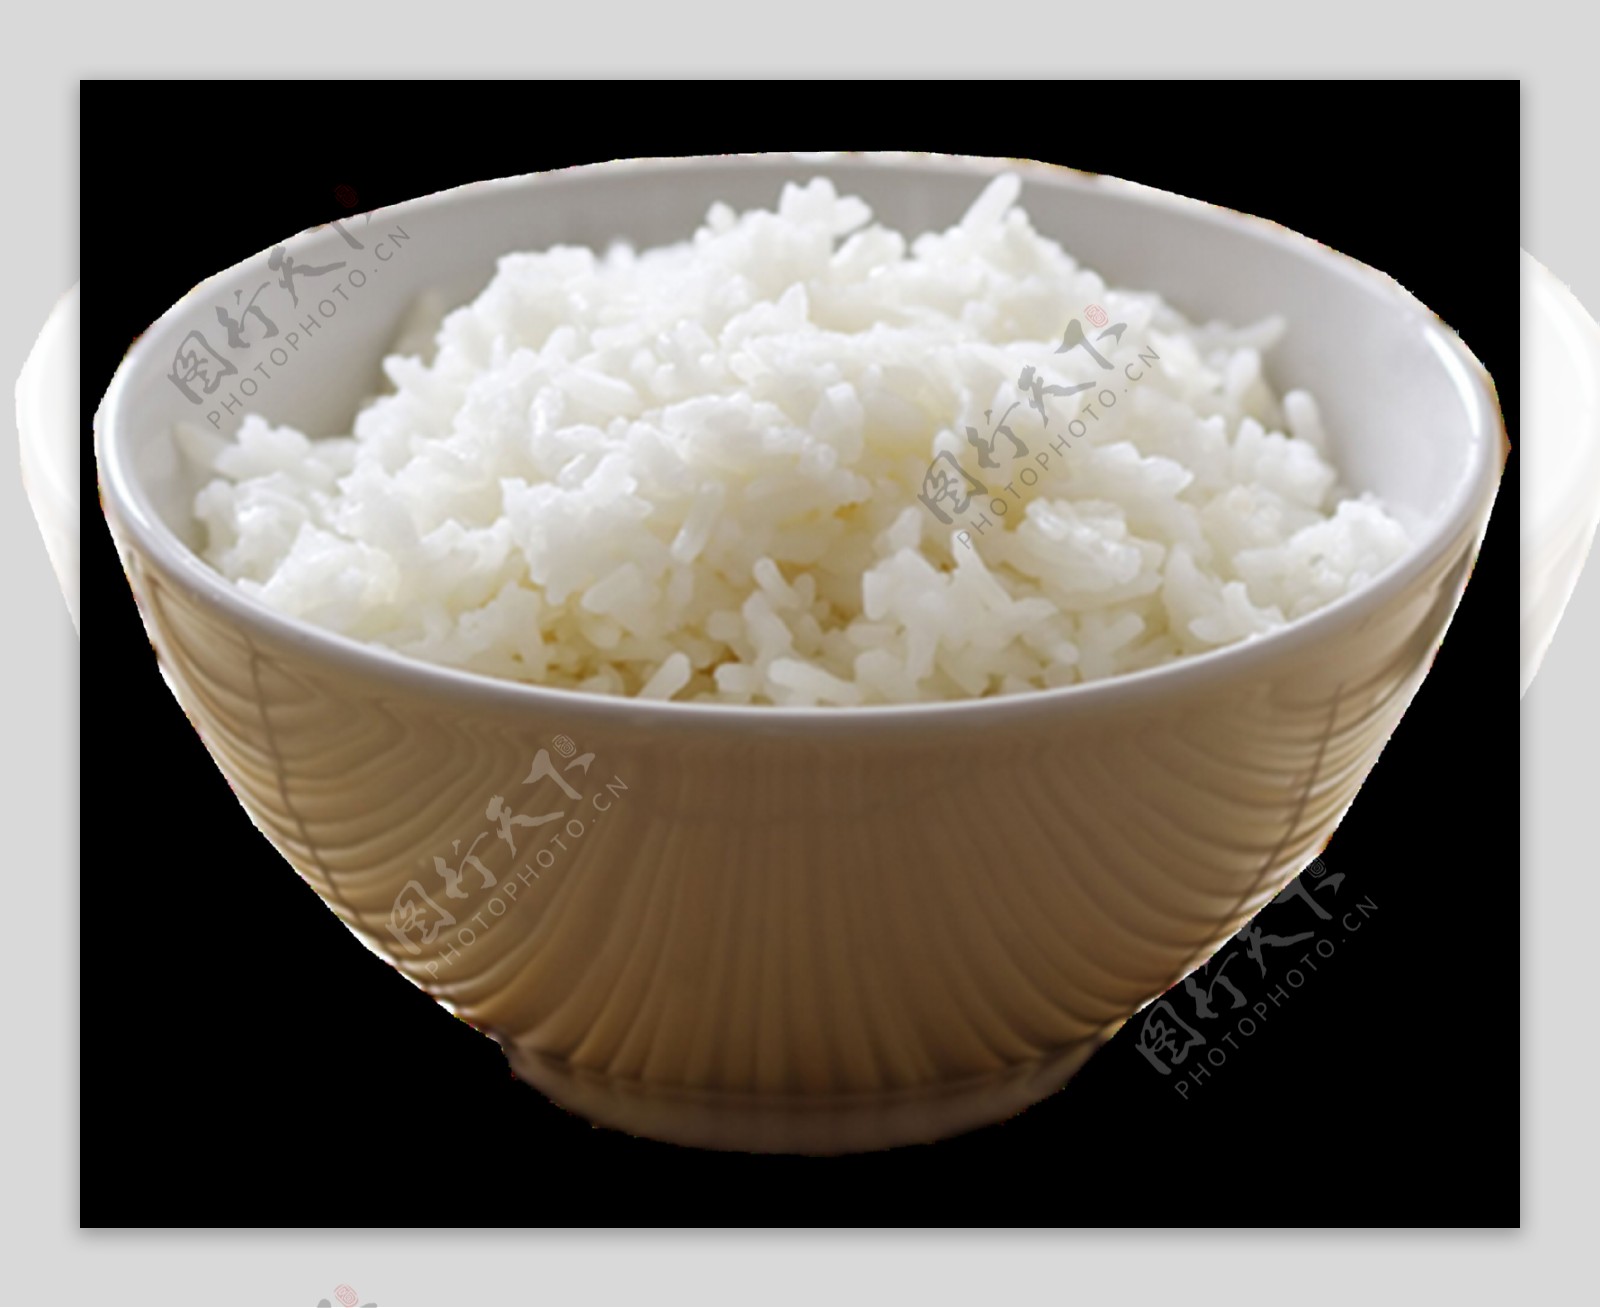 自嗨锅米饭生产工艺流程 山东济南 盛润 膨化机-食品商务网